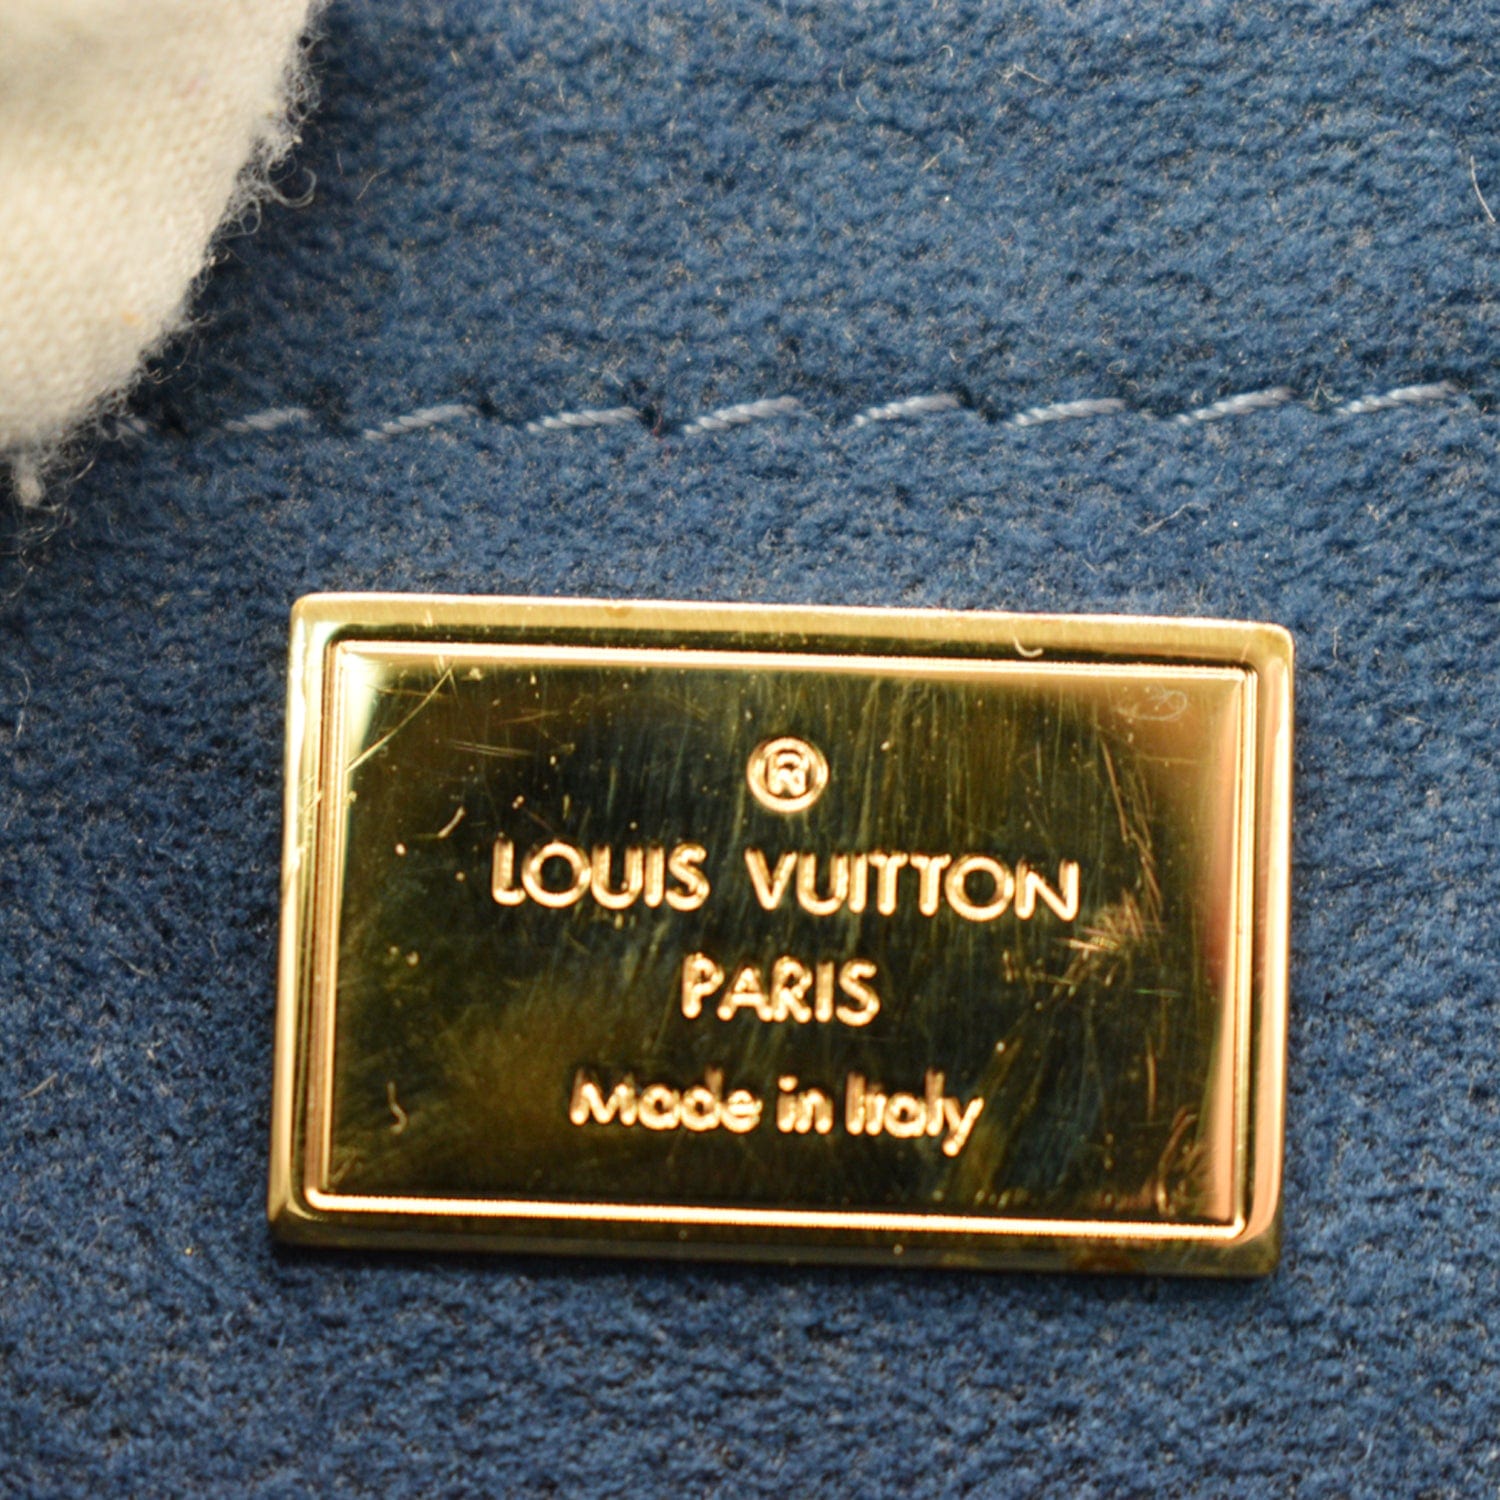 Authentic Louis Vuitton Vernis Shoulder Cross Body Pouch Bag Purse Red LV  9005E